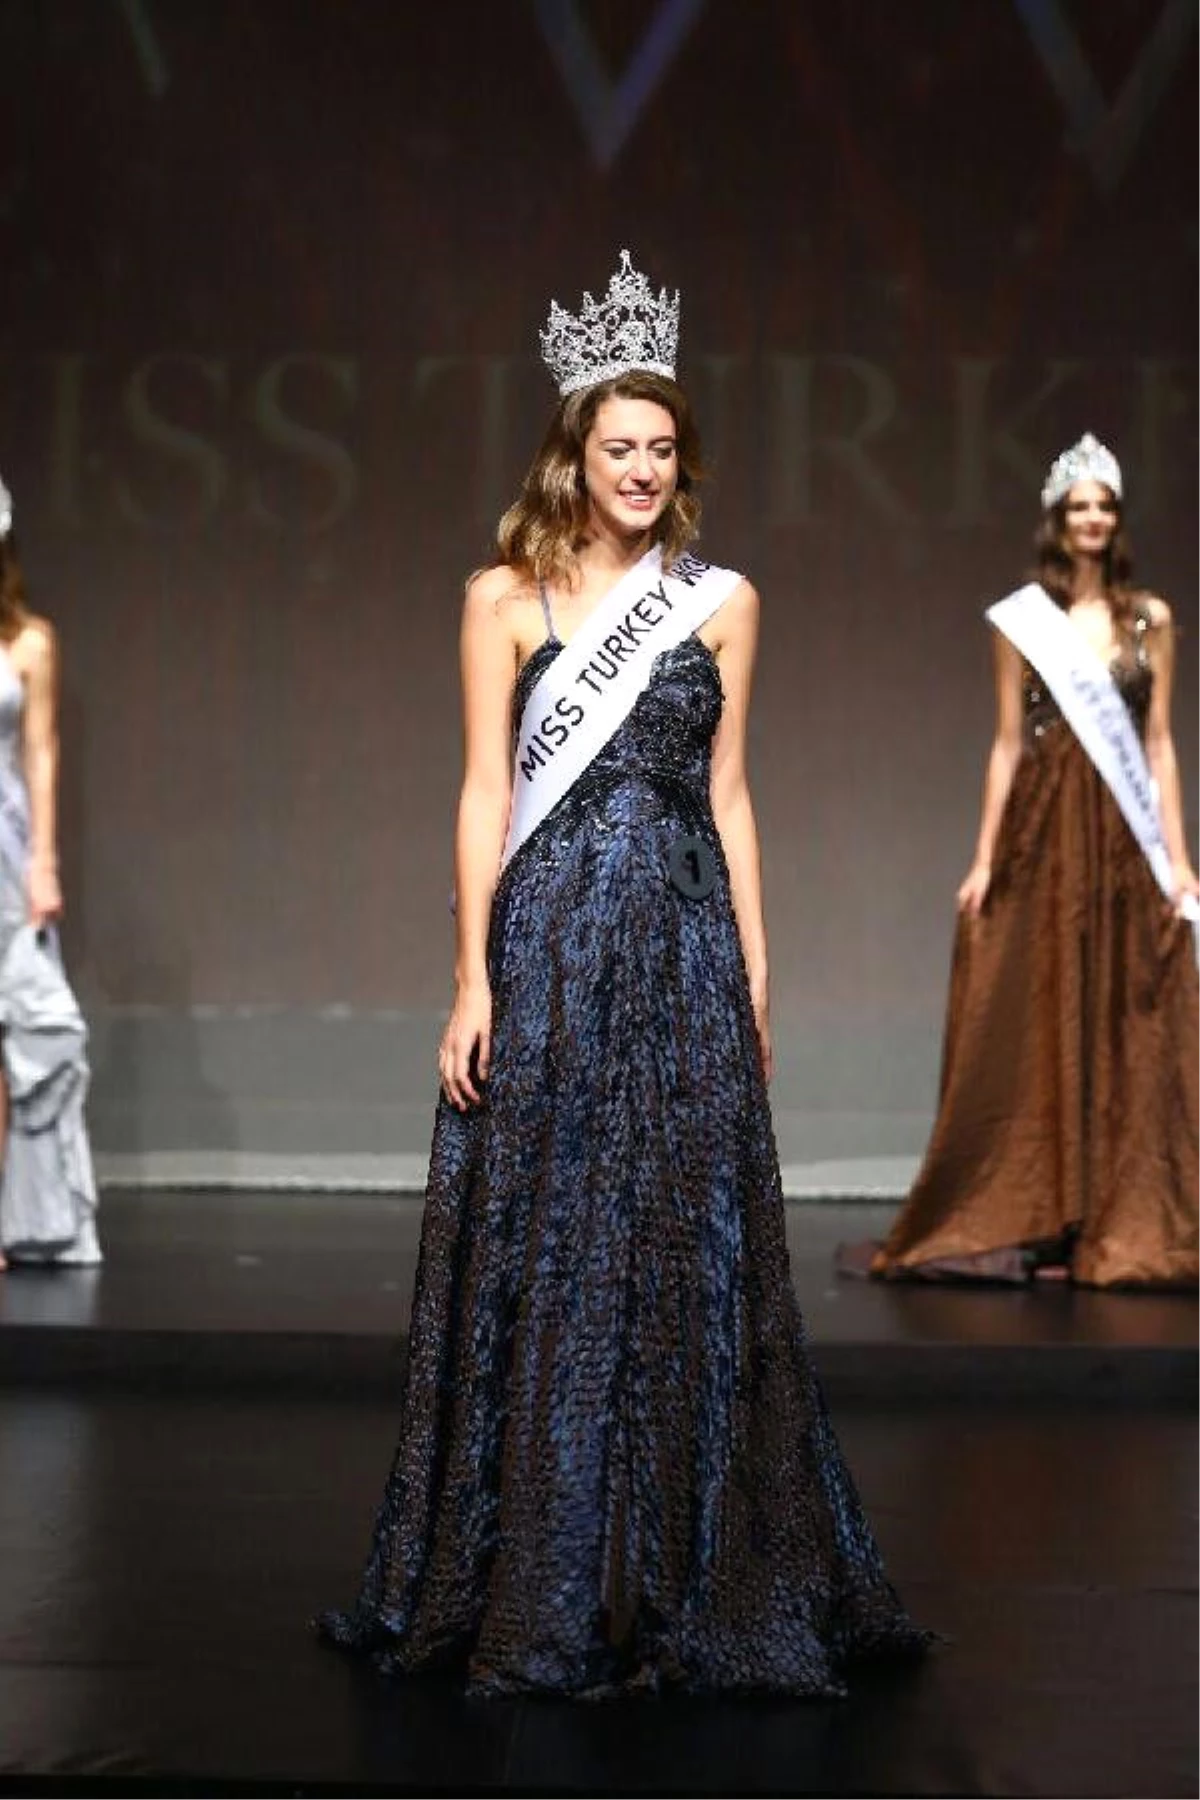 Miss Turkey 2017 Güzelinin Tacı "15 Temmuz" Paylaşımı Nedeniyle Geri Alındı